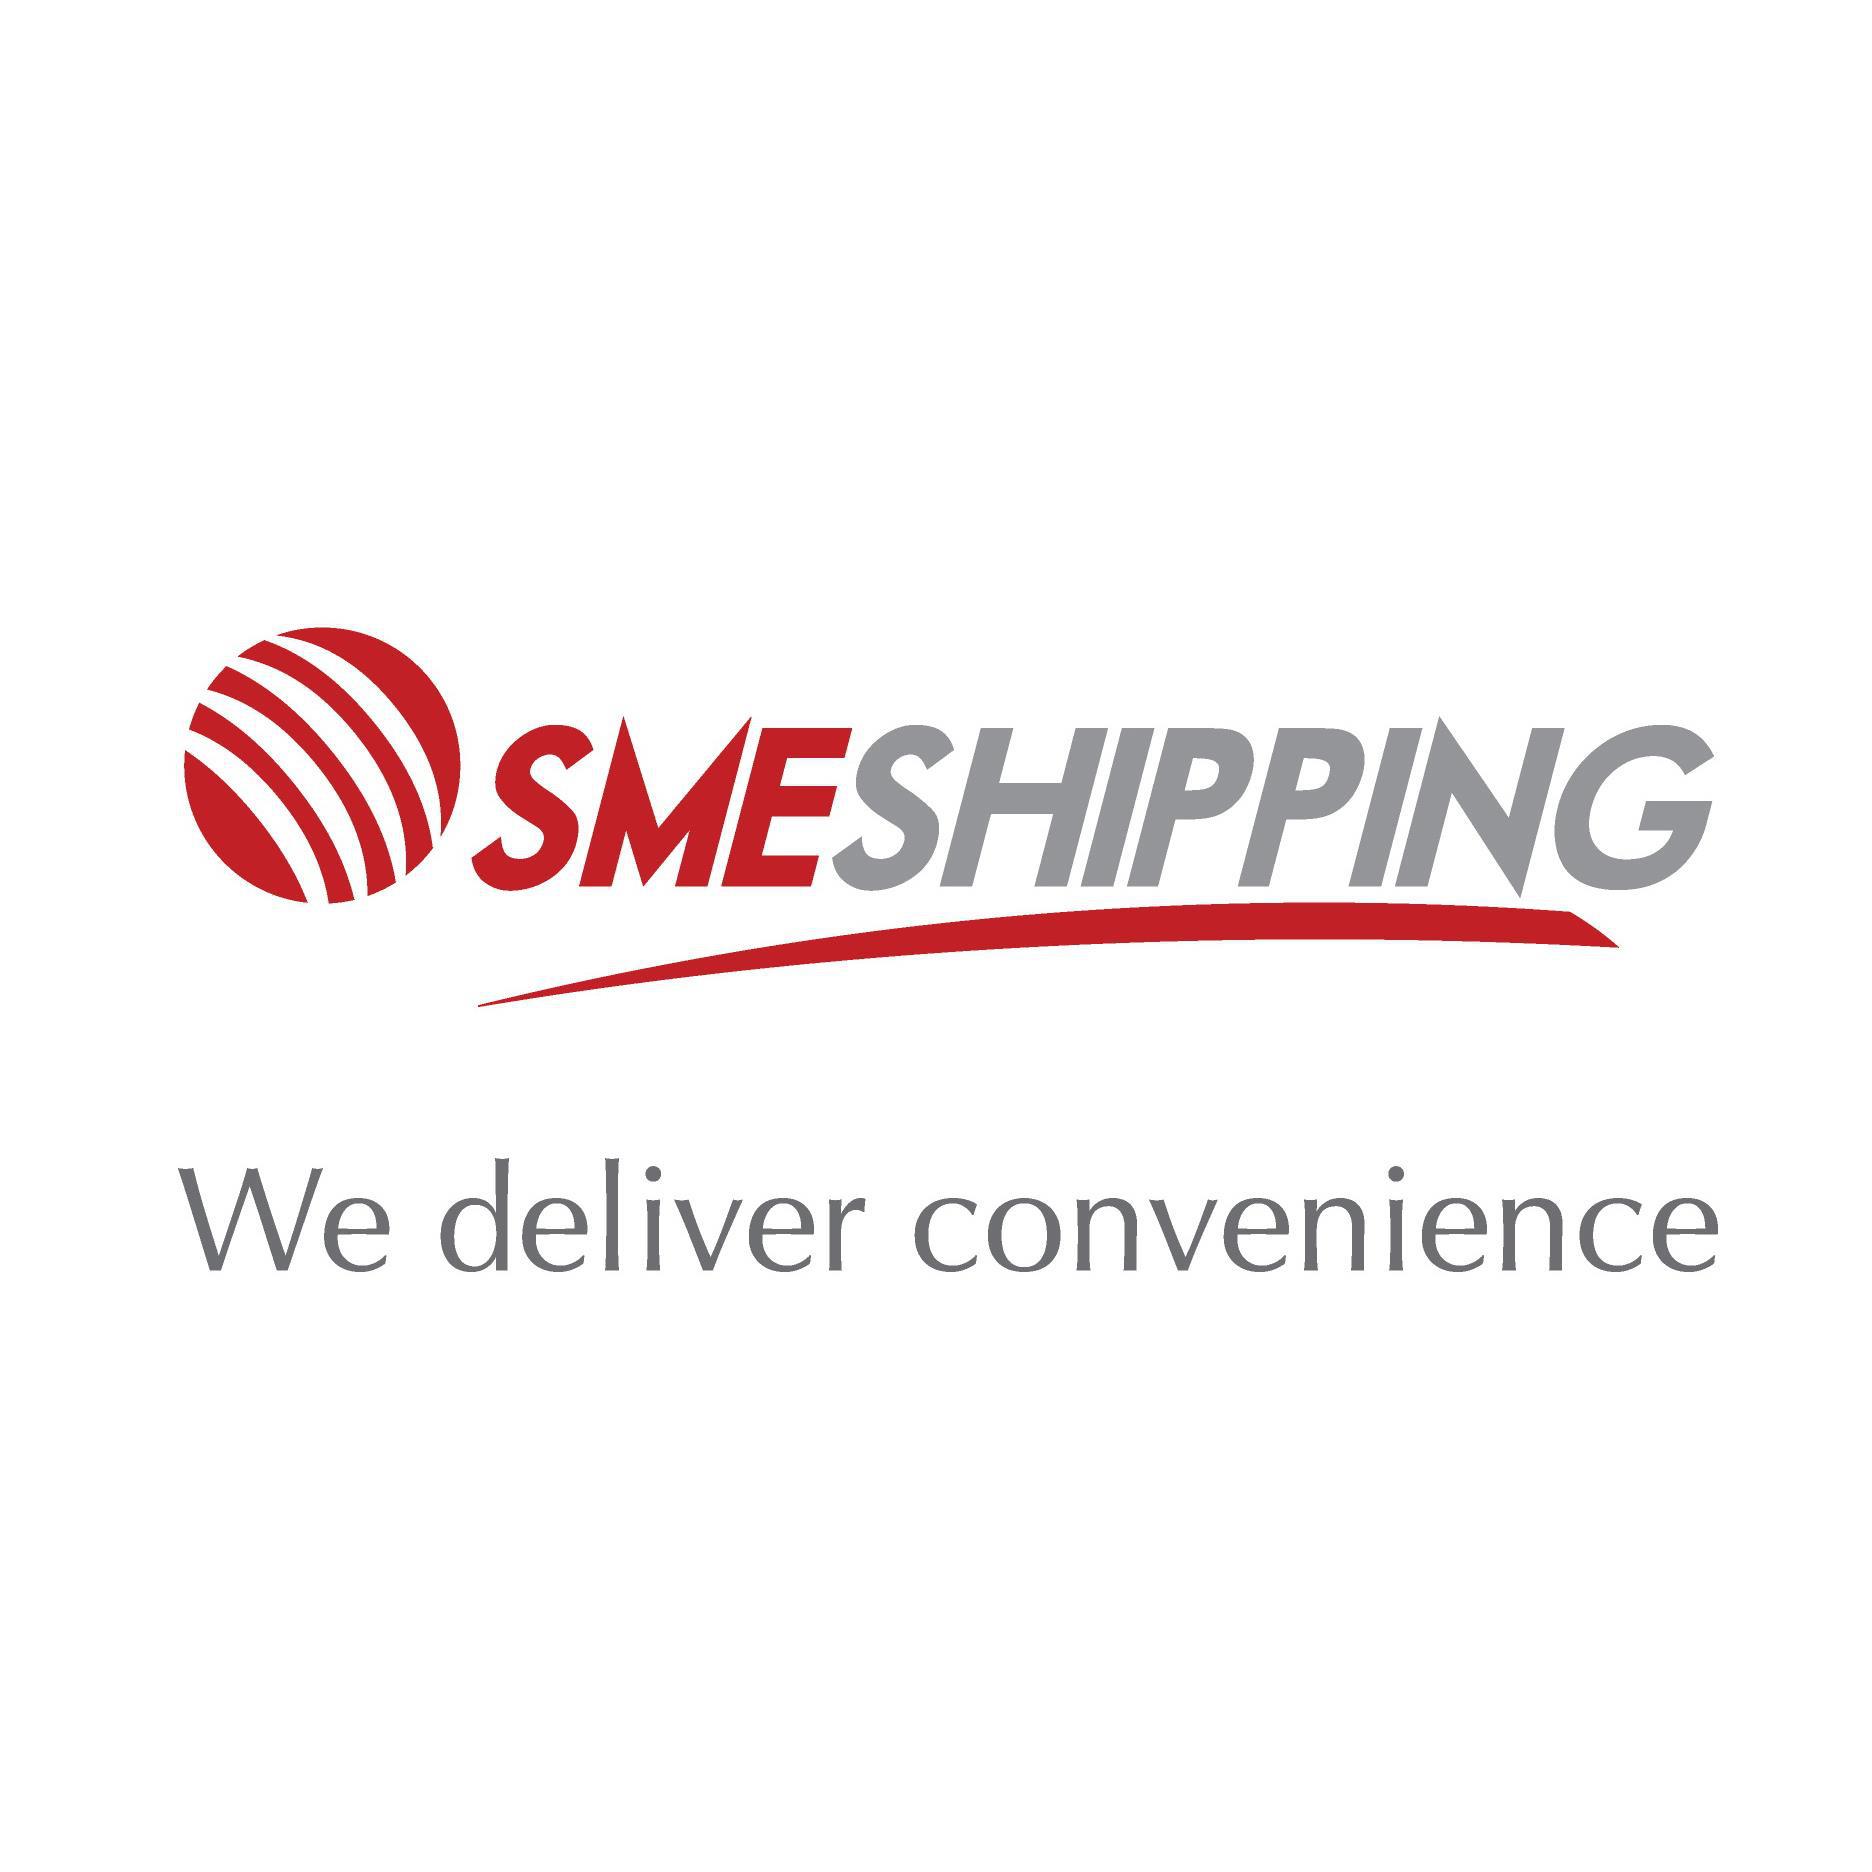 SME Shipping